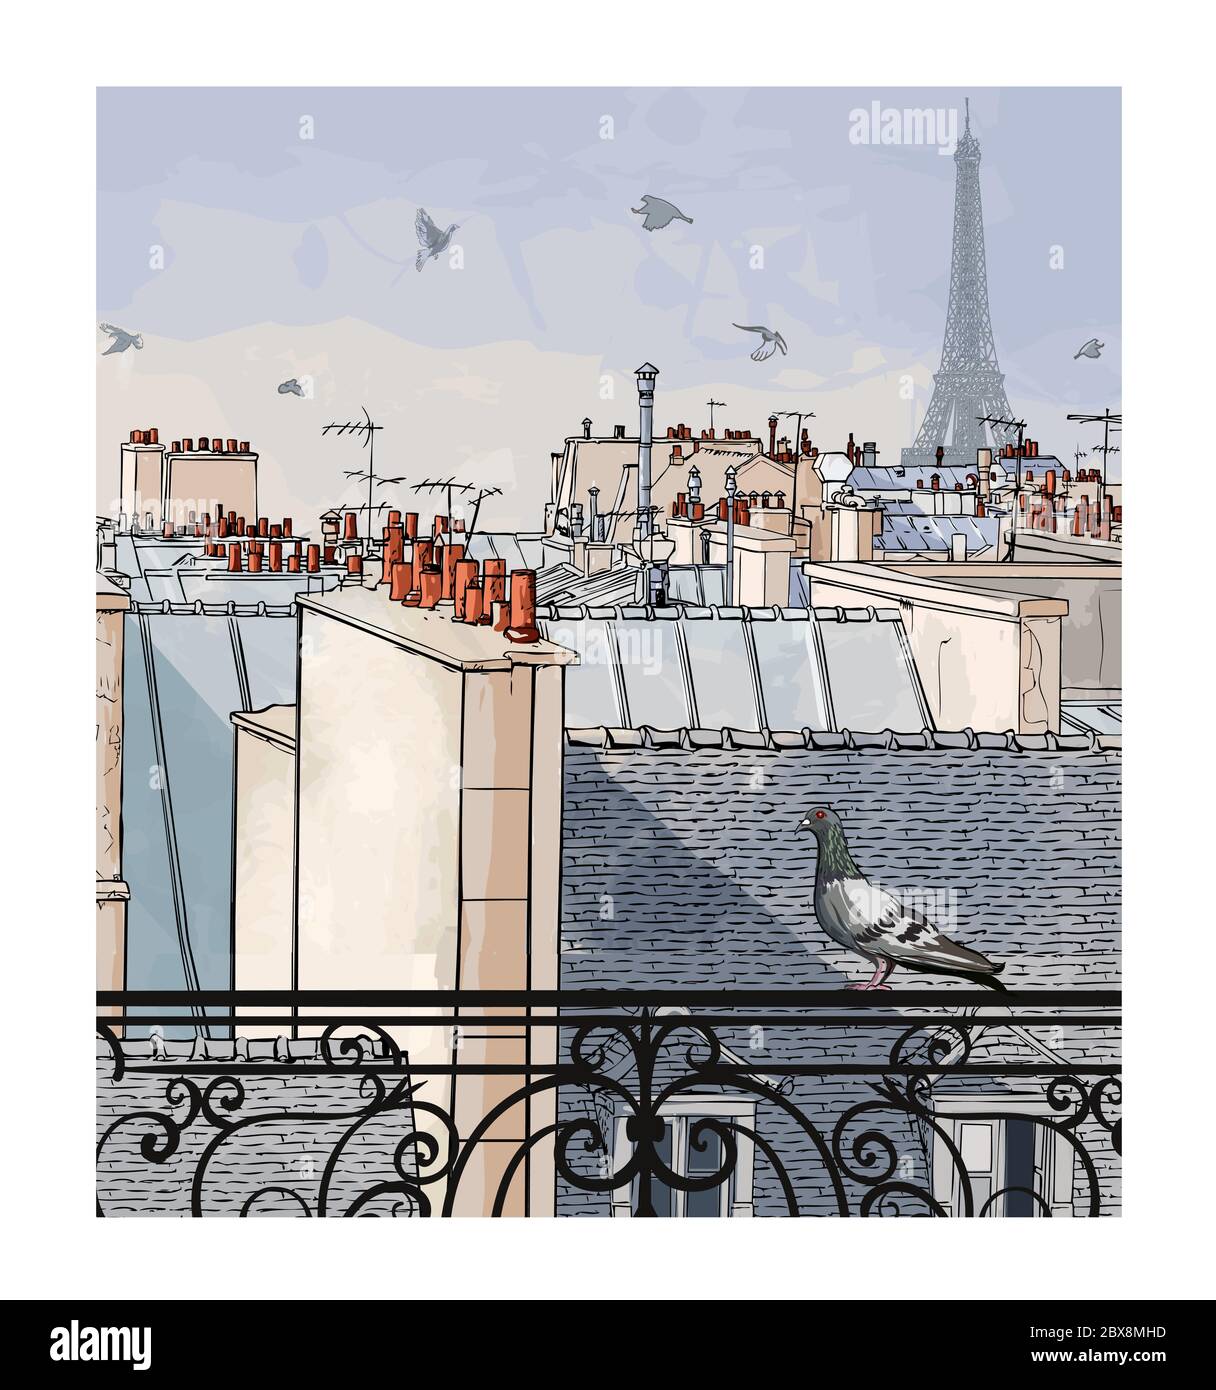 Vue panoramique aérienne de Paris, France avec la tour Eiffel - illustration vectorielle (idéale pour l'impression sur tissu ou papier, poster ou papier peint) Illustration de Vecteur